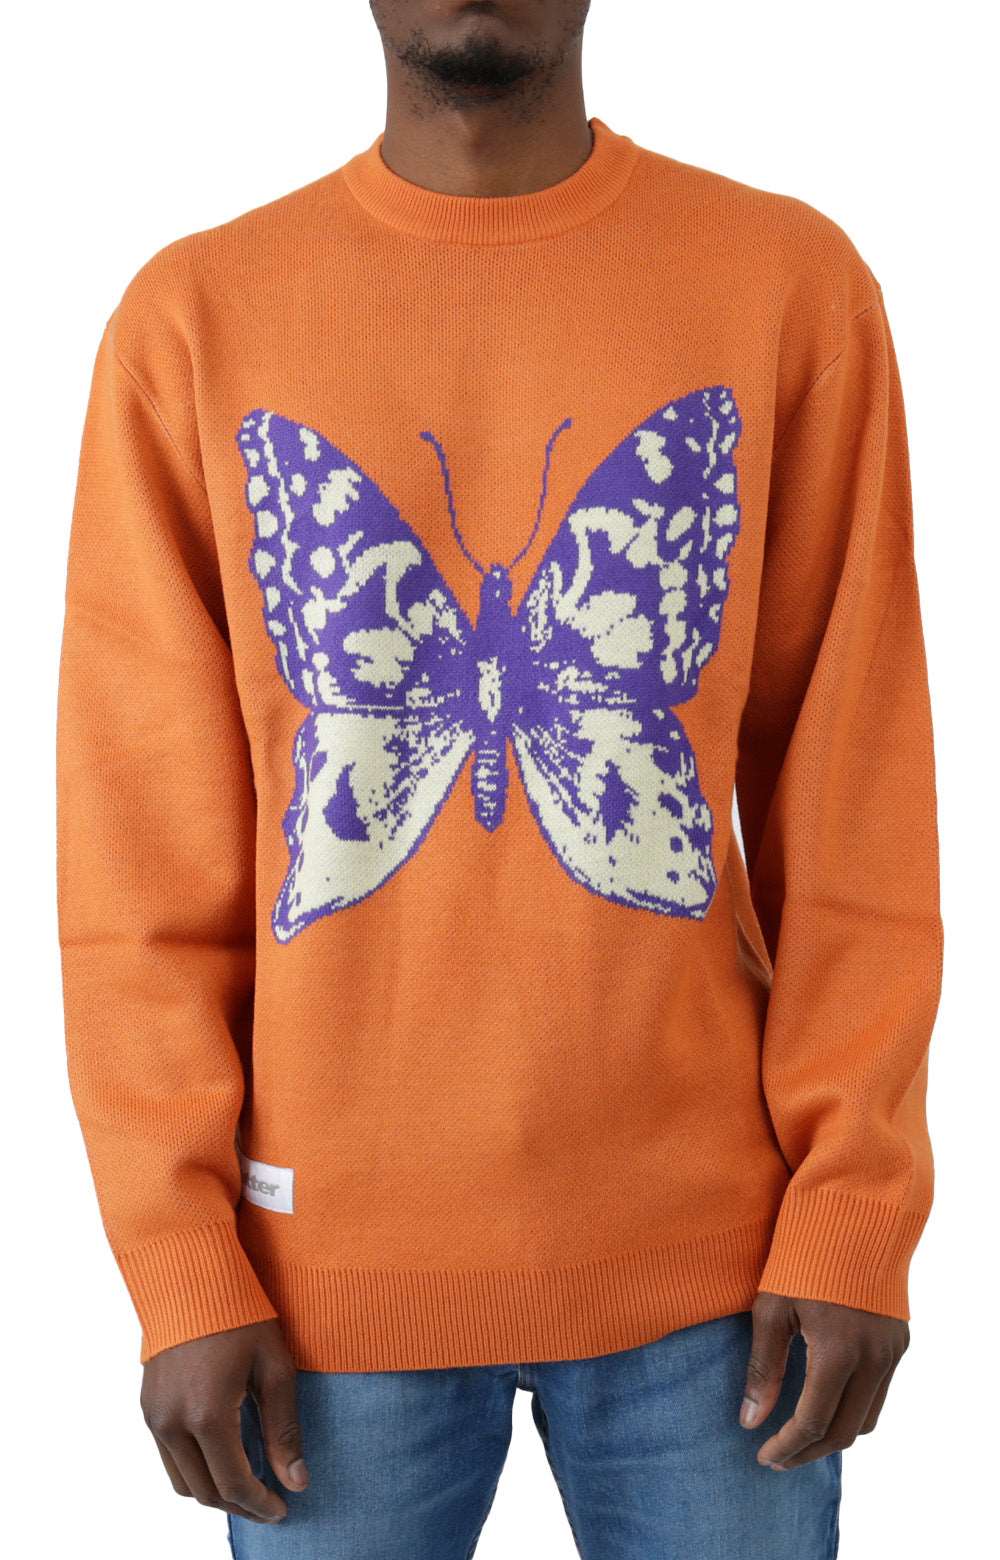 Butterfly Knit Sweater - Burnt Orange